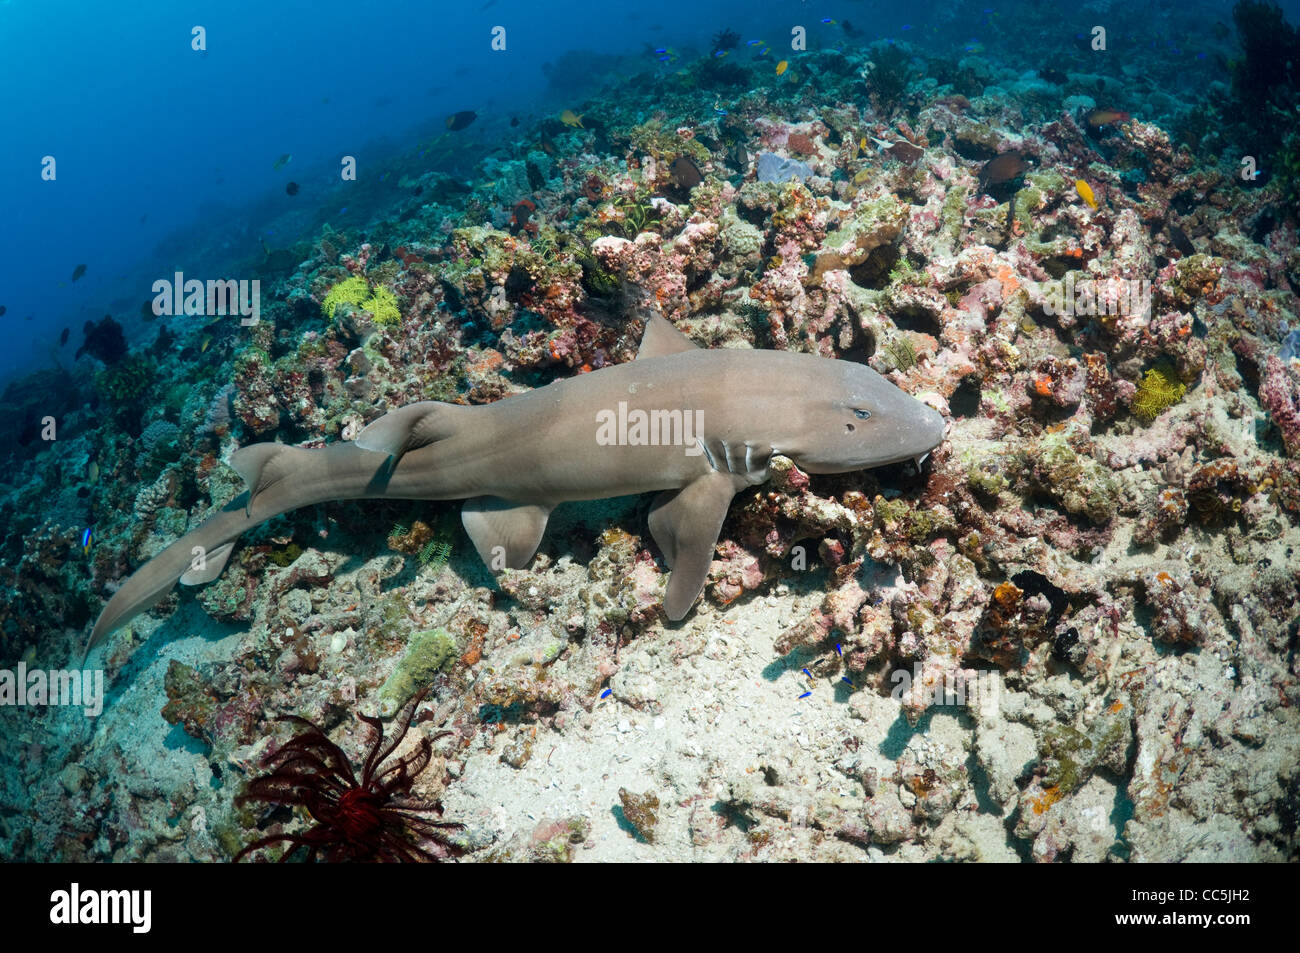 Brownbanded bamboo shark (Chiloscyllium punctatum). Indonesia. Stock Photo